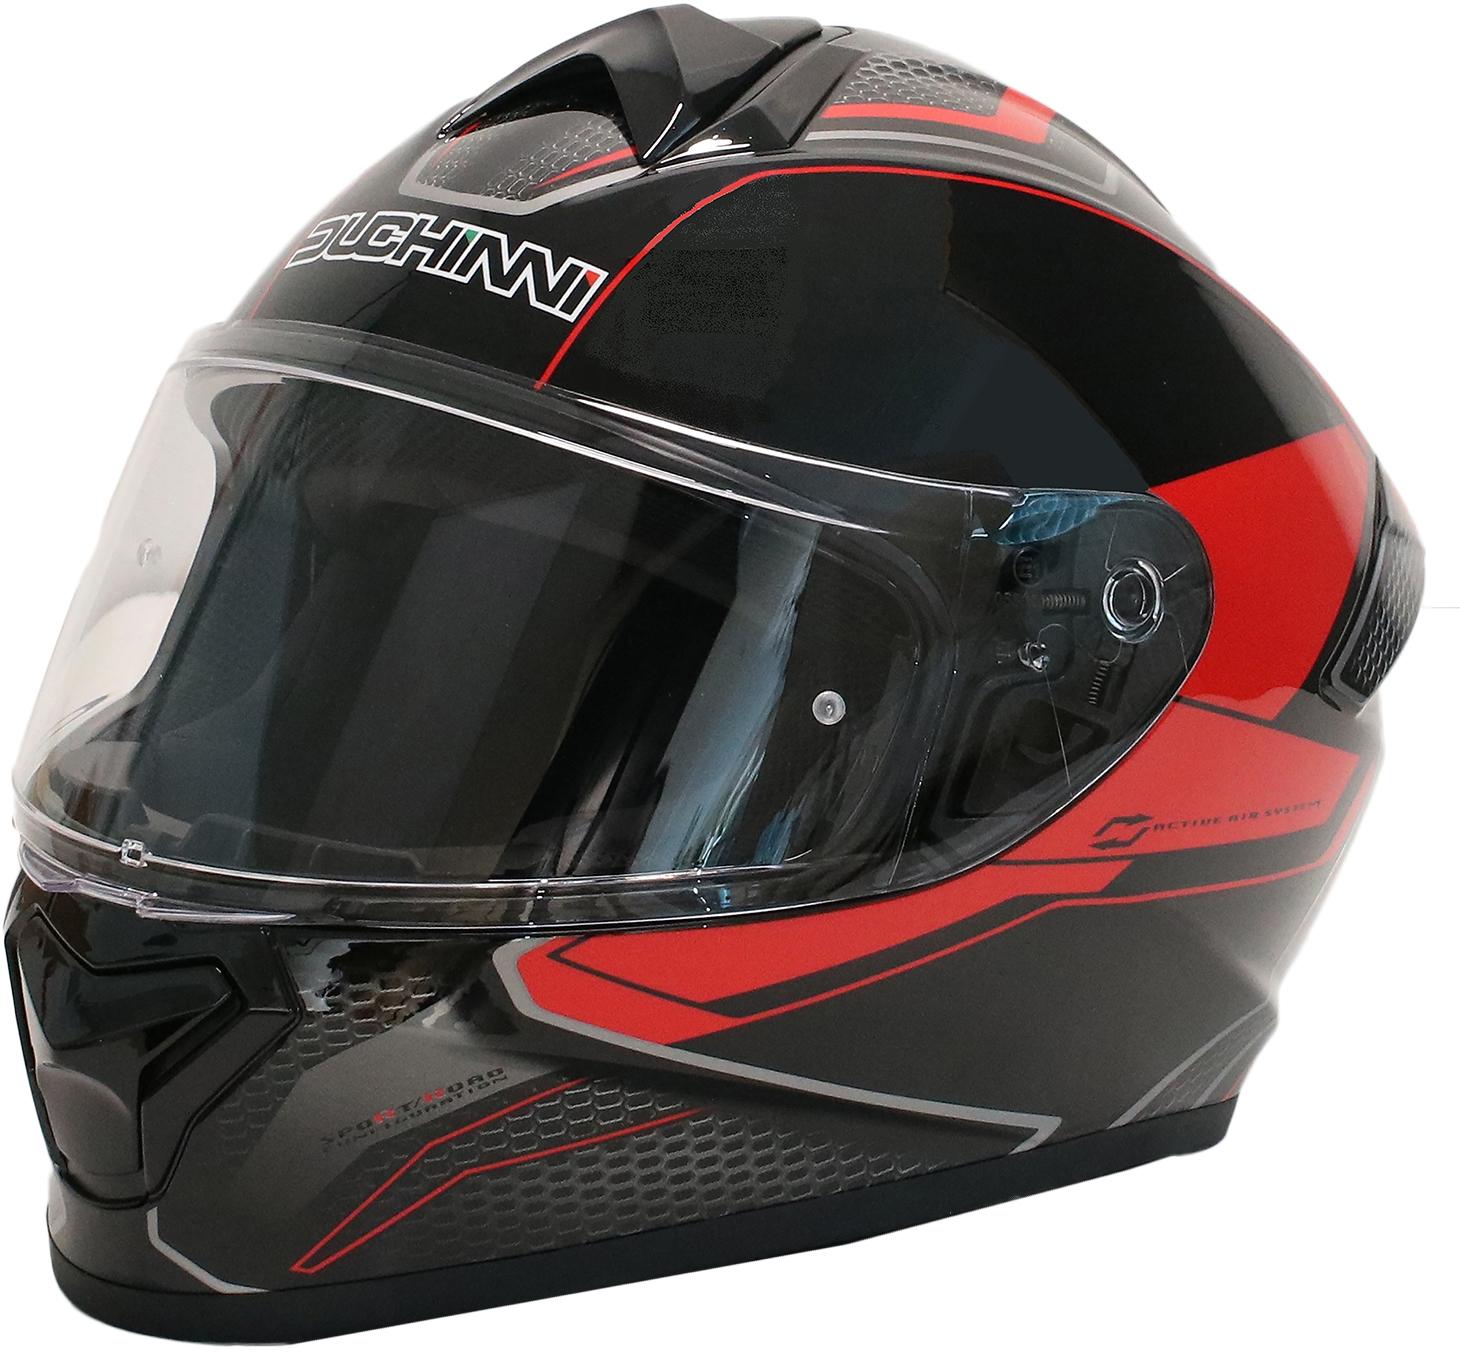 Duchinni Black/Red Helmet D977 Xl